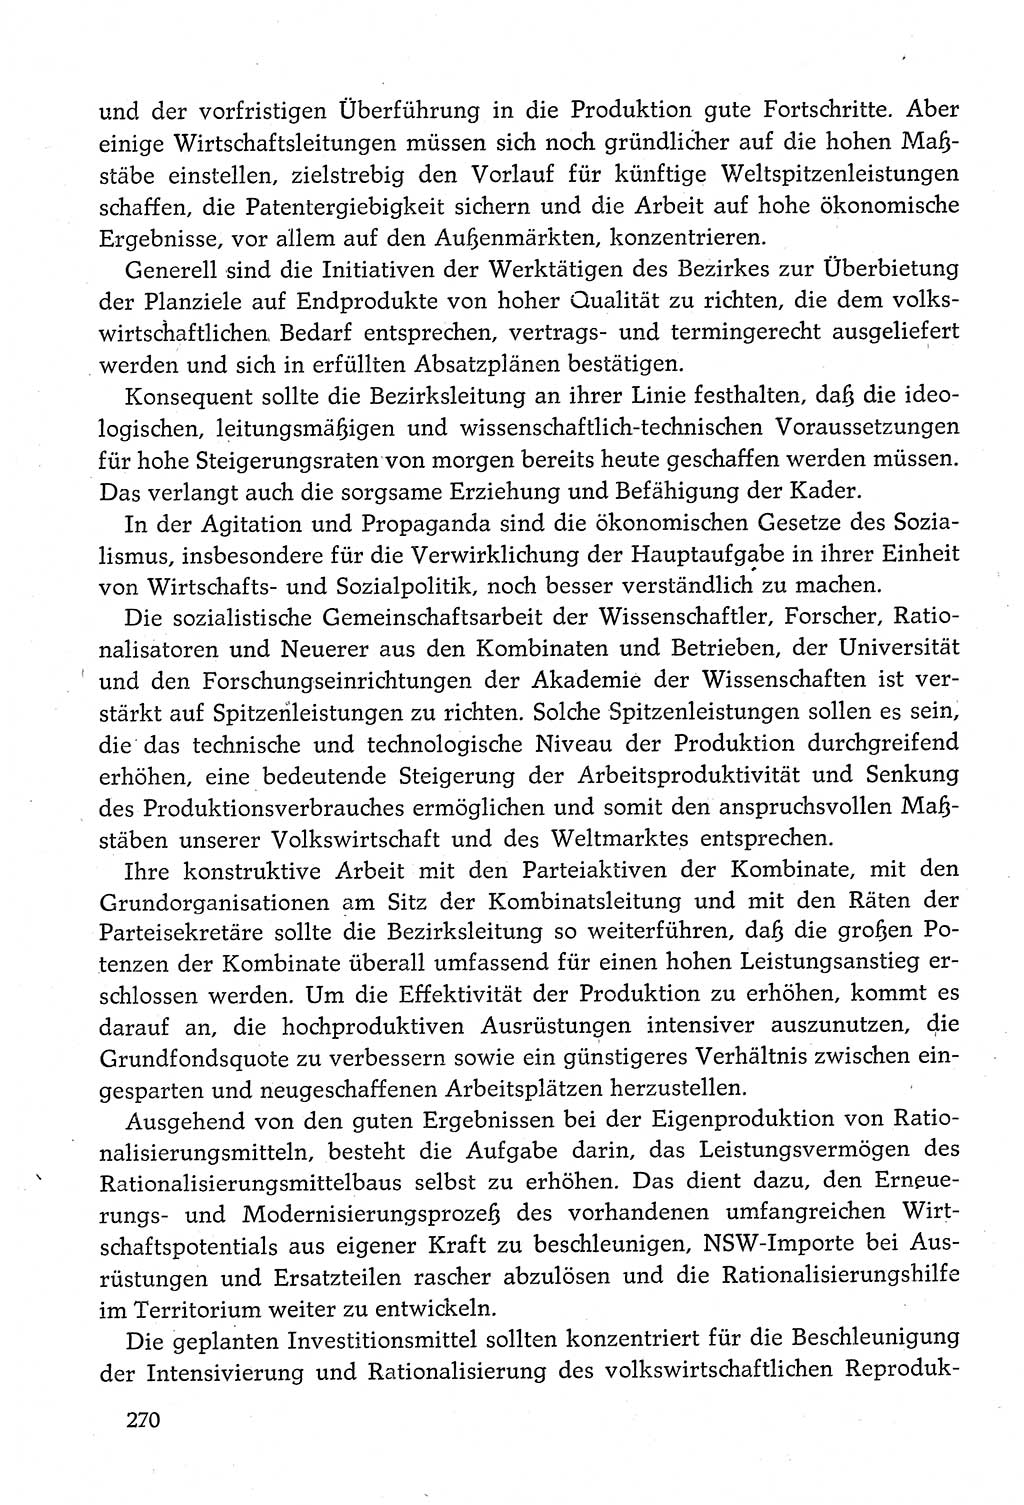 Dokumente der Sozialistischen Einheitspartei Deutschlands (SED) [Deutsche Demokratische Republik (DDR)] 1980-1981, Seite 270 (Dok. SED DDR 1980-1981, S. 270)